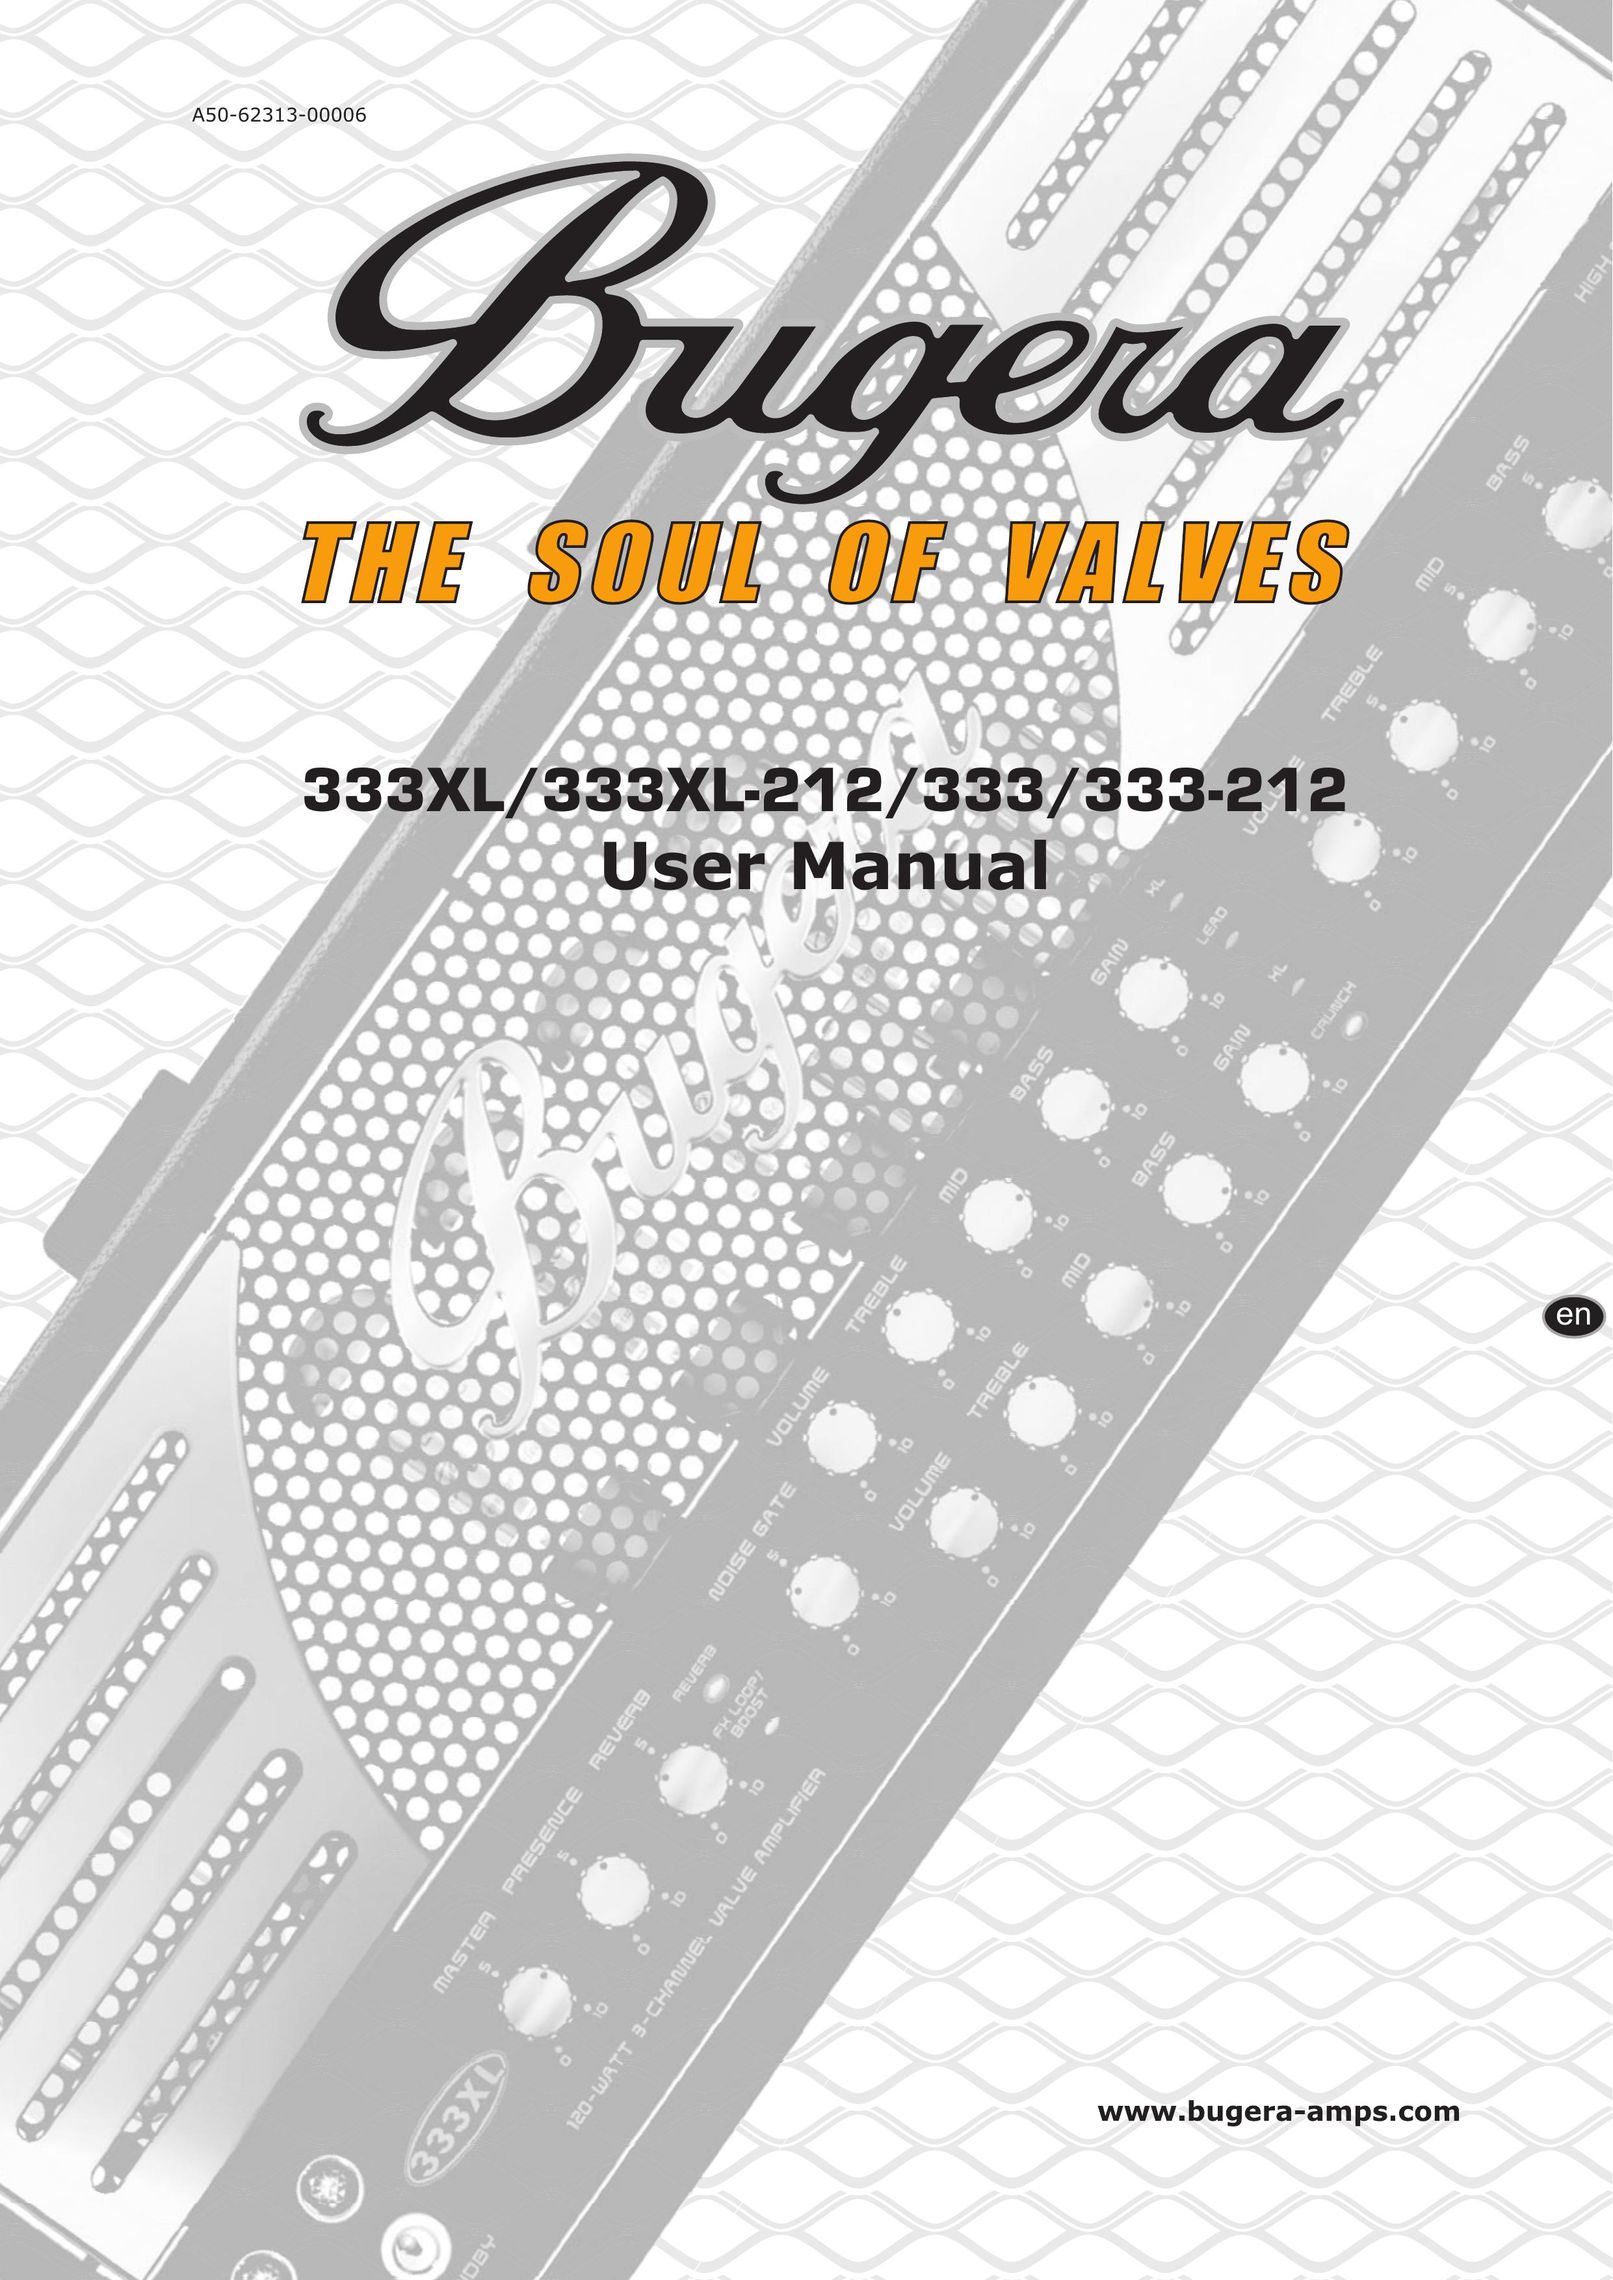 Behringer 333-212 Stereo Amplifier User Manual